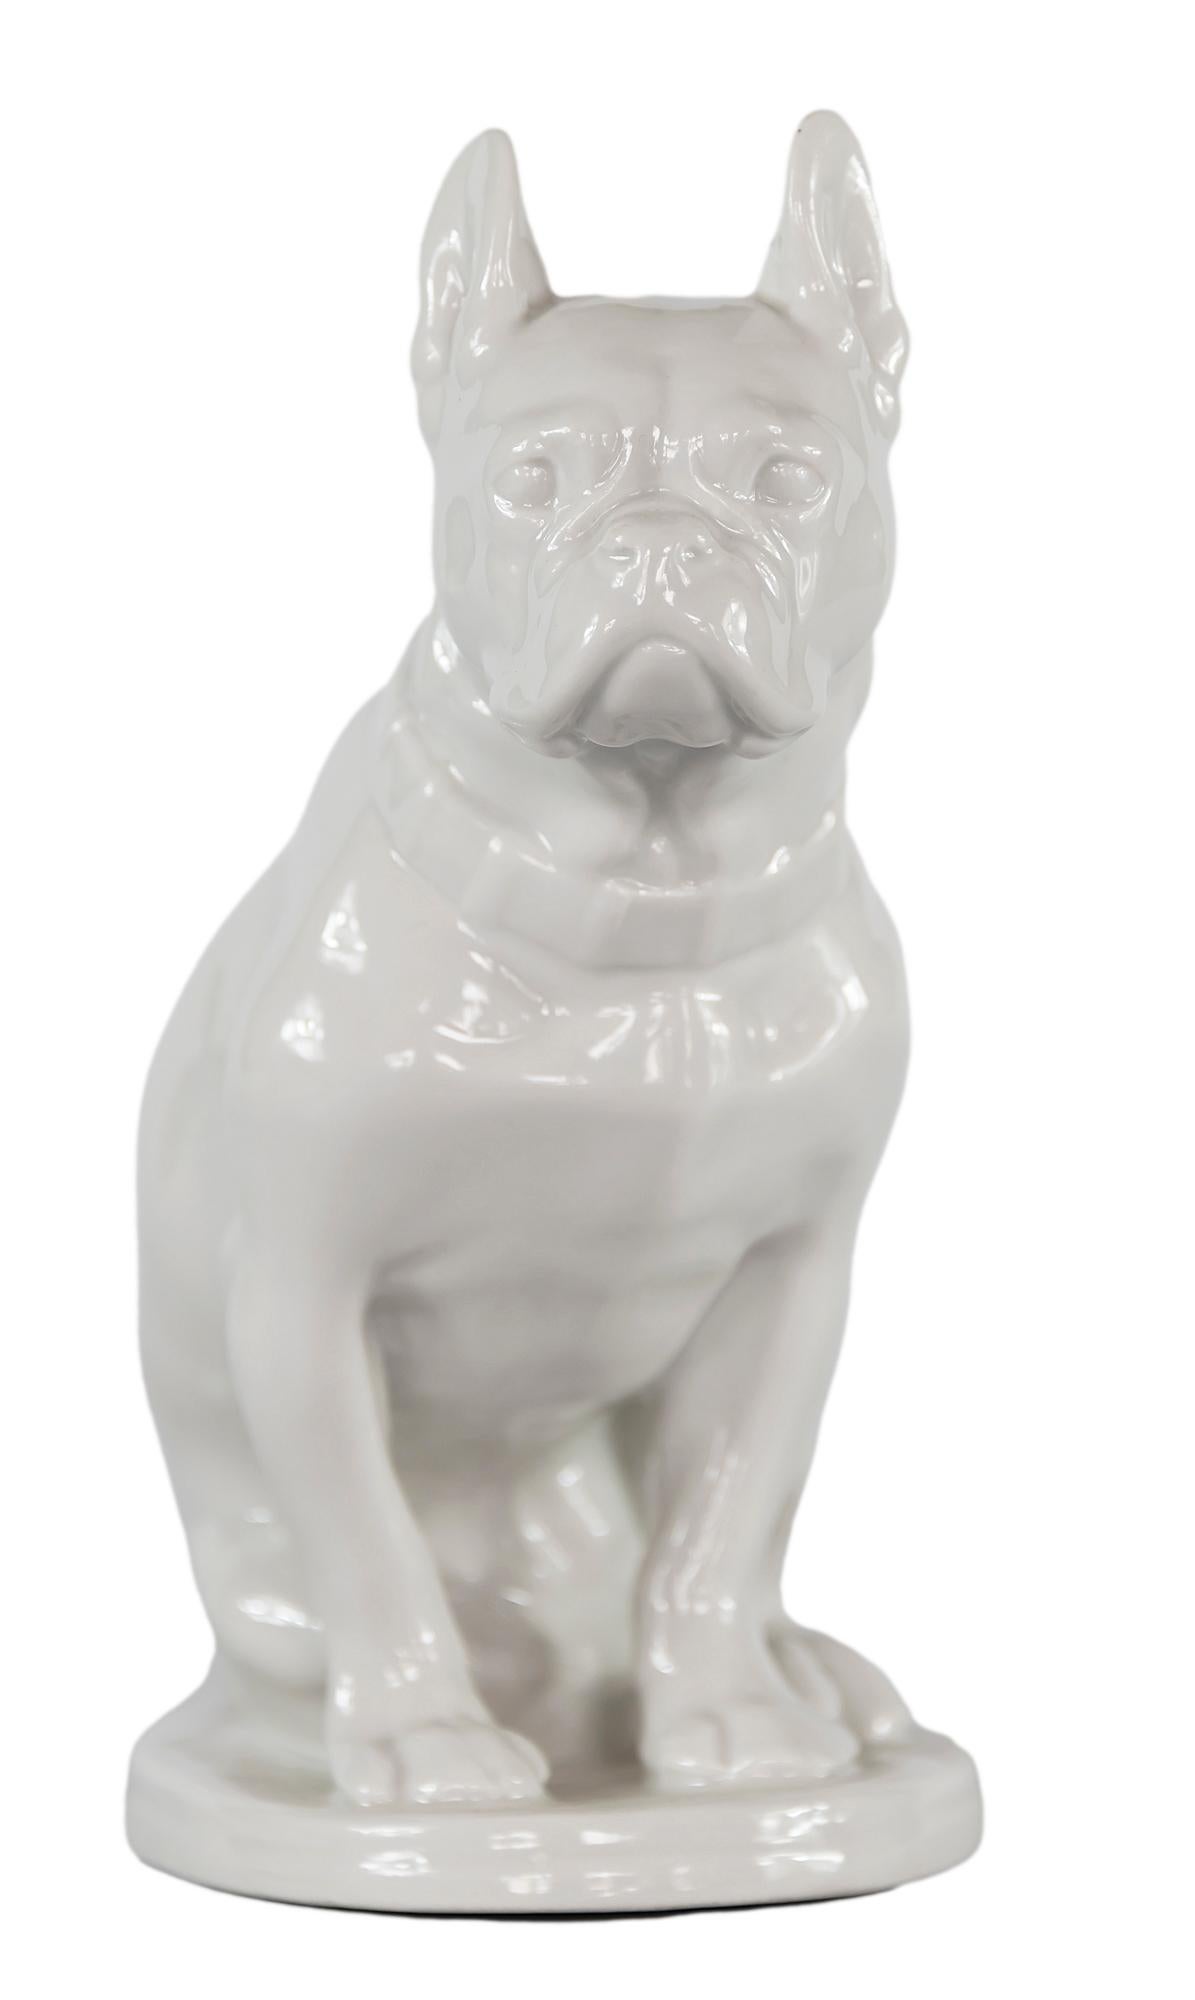 Vieille figurine de bulldog en porcelaine blanche émaillée de l'usine russe de porcelaine Lomonosov LFZ.
Marqué sur le fond.